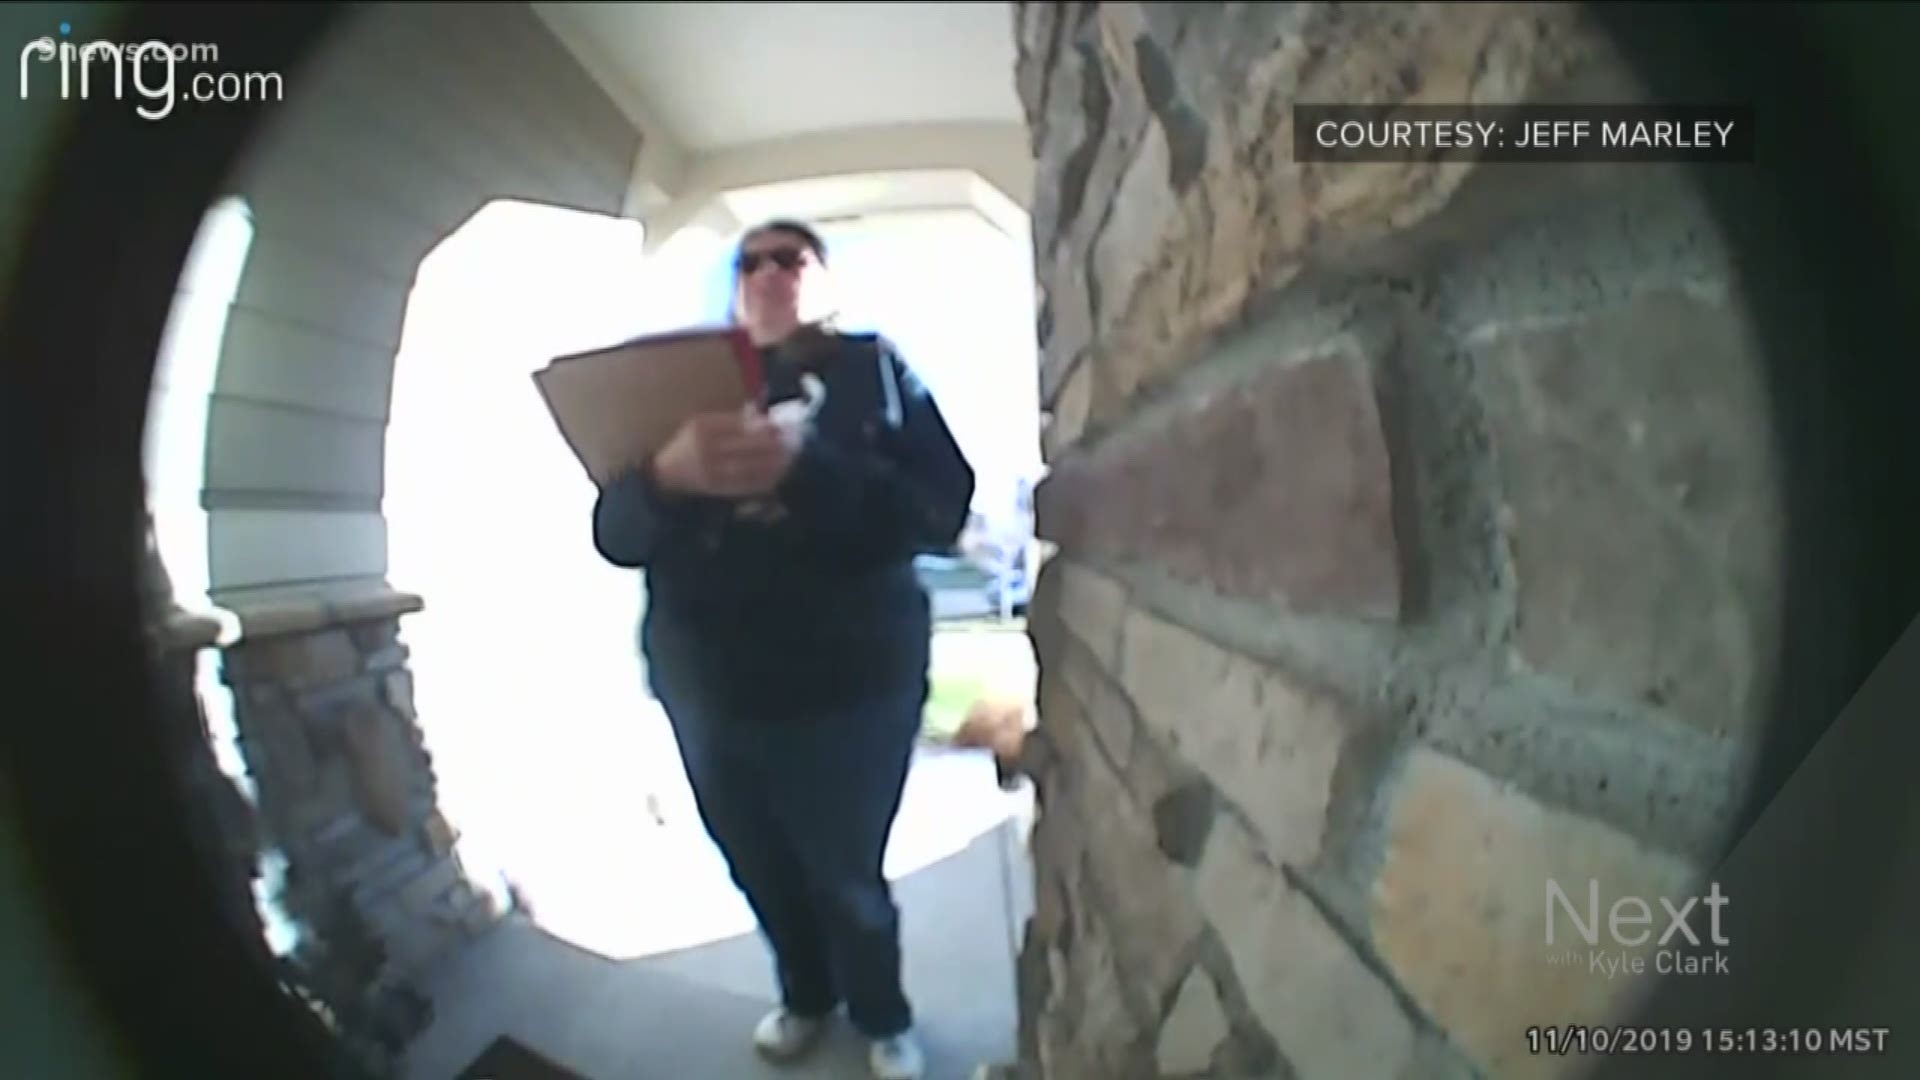 The voter shared video of the volunteer's door-to-door visit showing the incident.